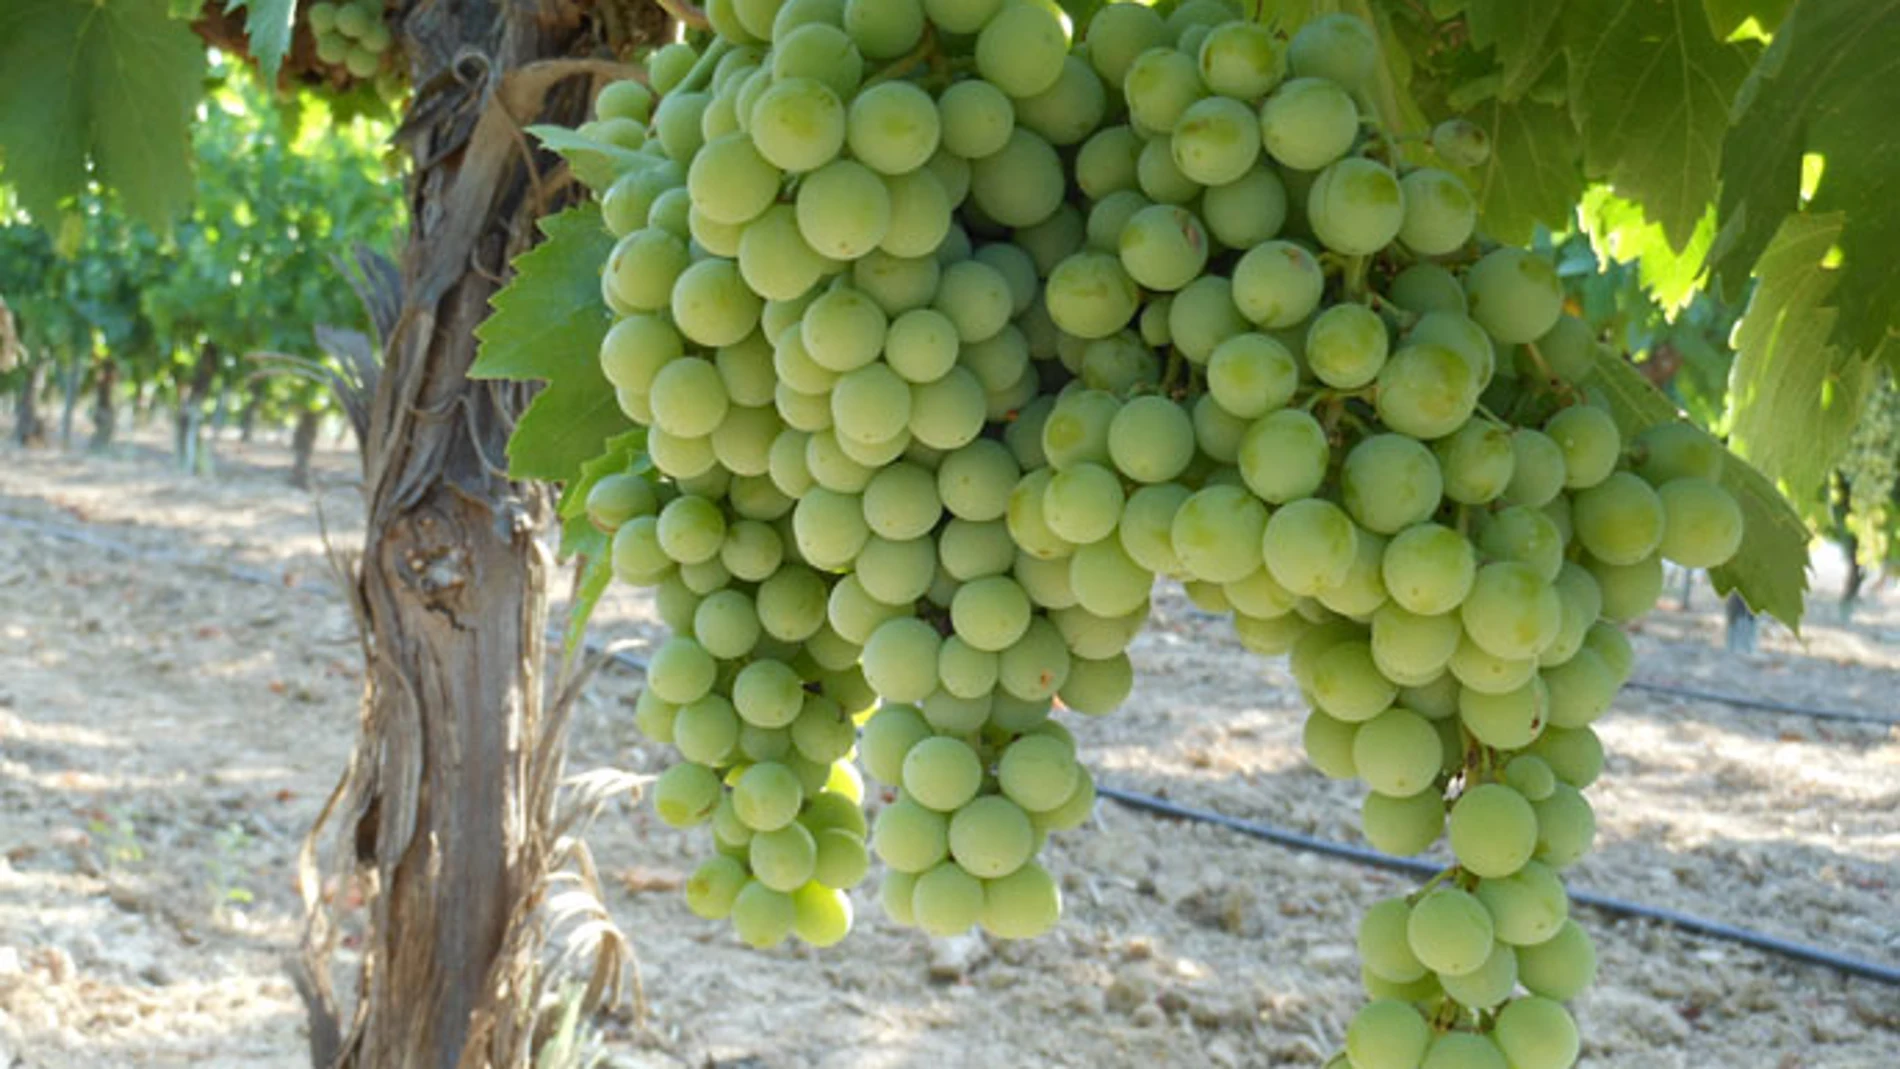 La muestra detalla todo el proceso investigador desde la plantación de la uva hasta la producción de vino